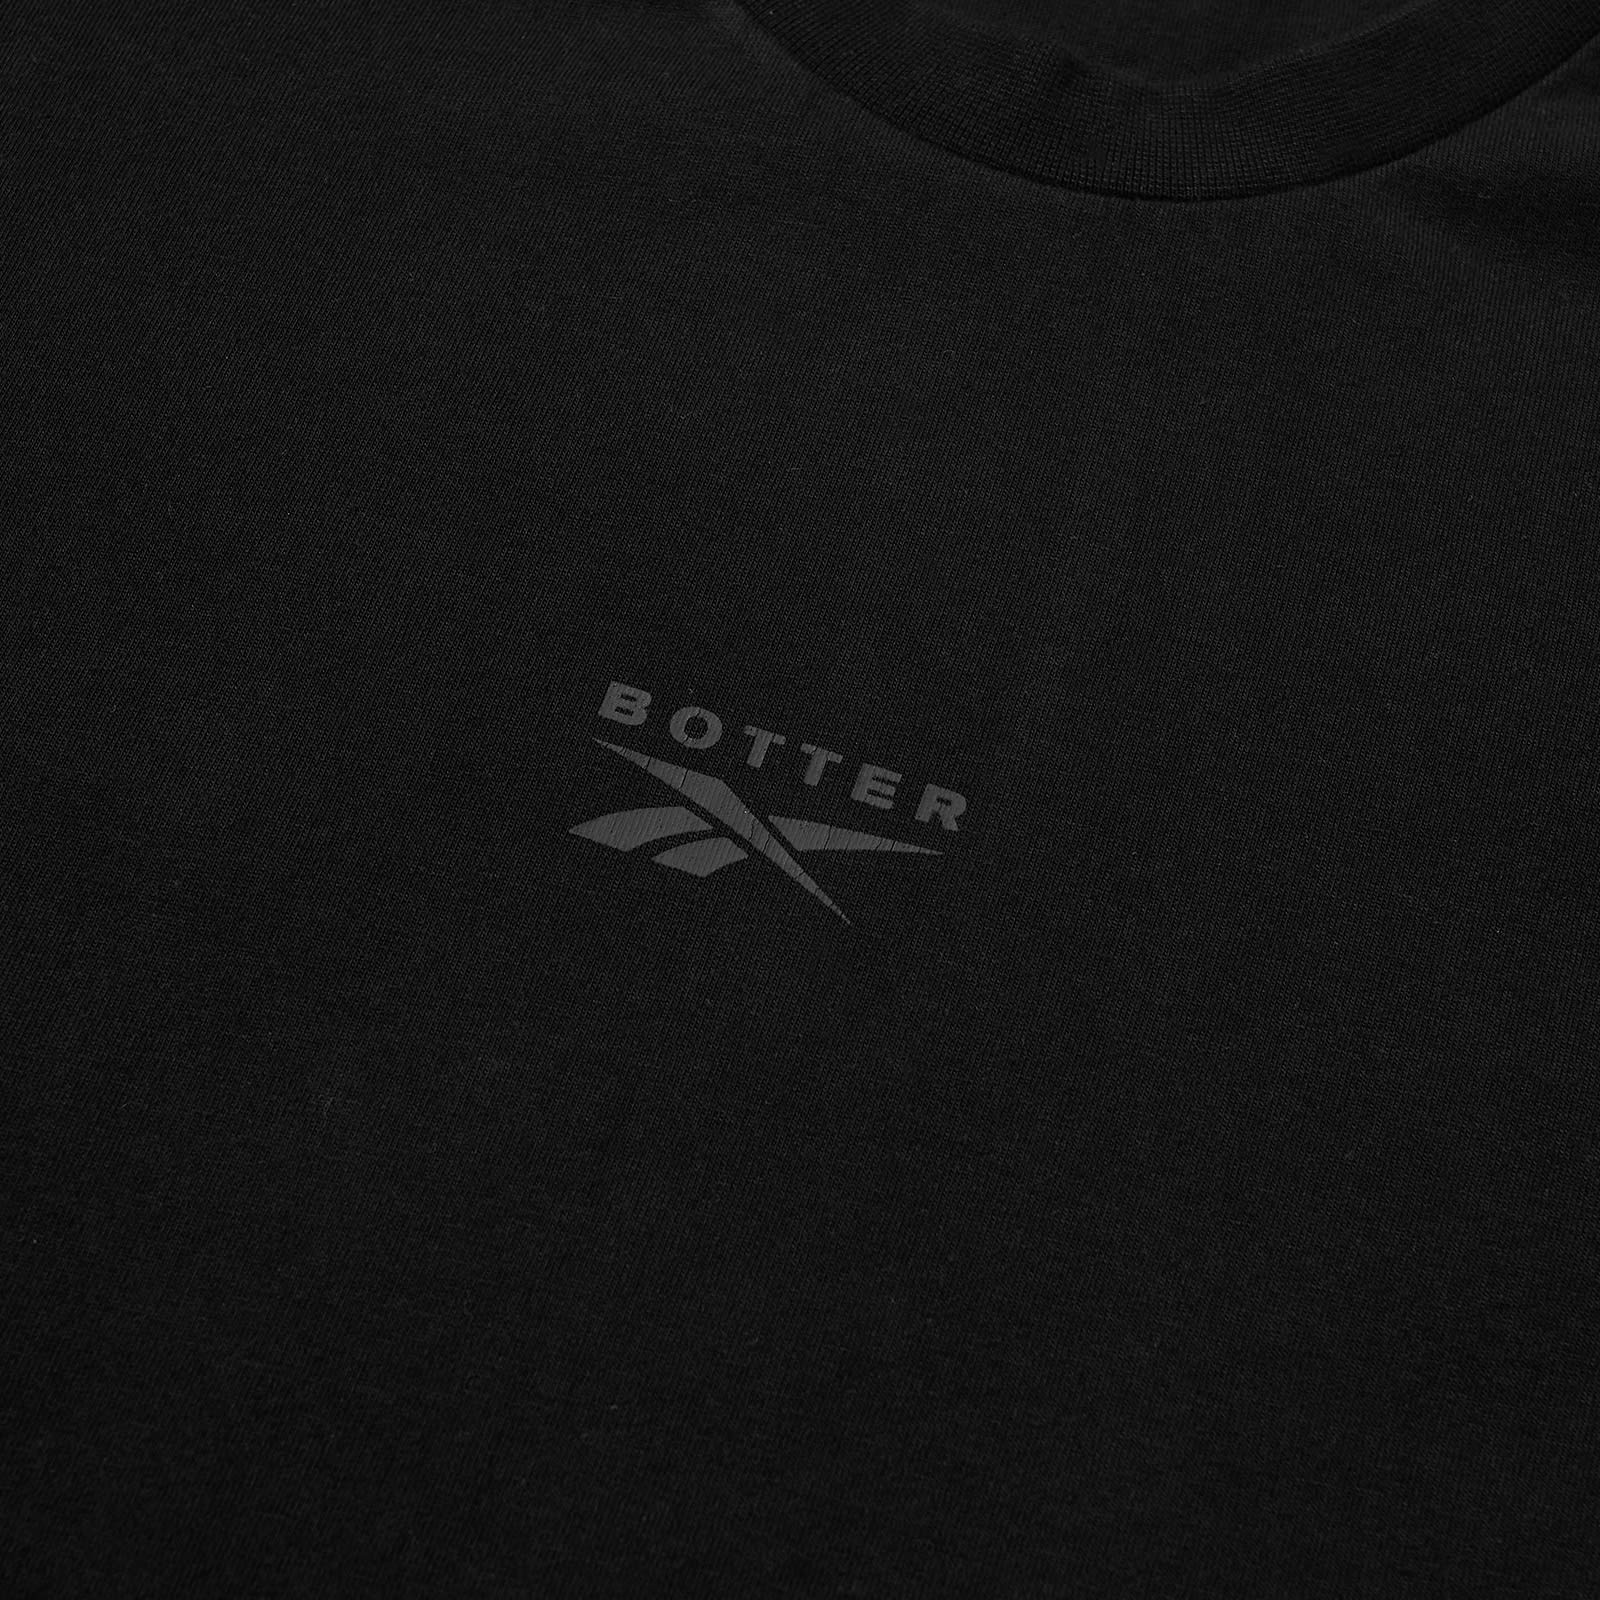 Botter x Reebok Trompe L'Oeil T-Shirt - 2